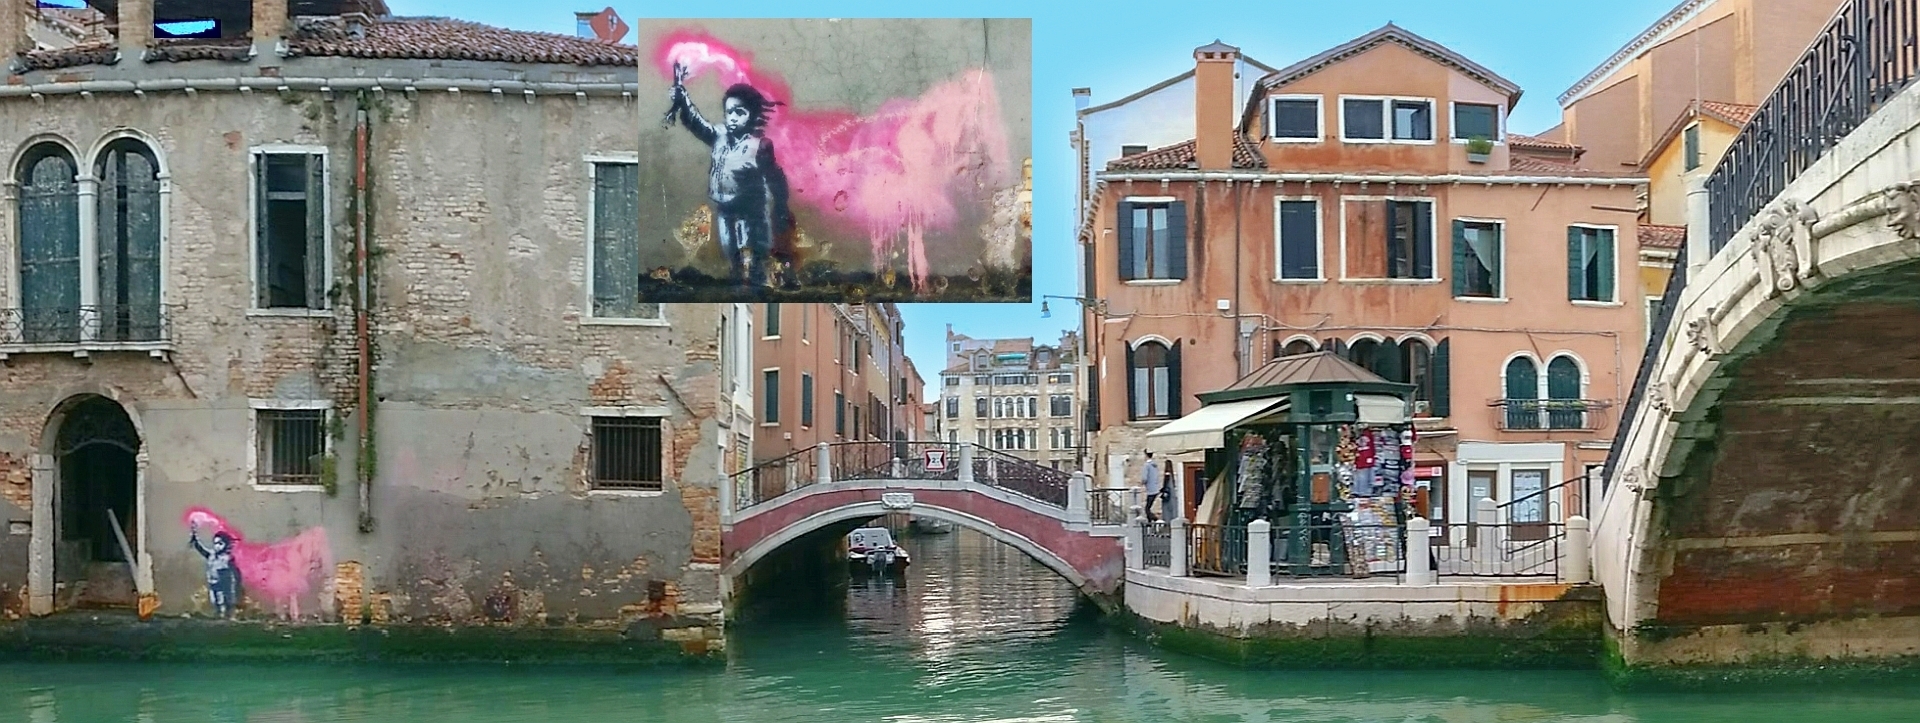 Mai 2019 hinterließ der weltbekannte Künstler Banksy in Venedig dieses Graffito.